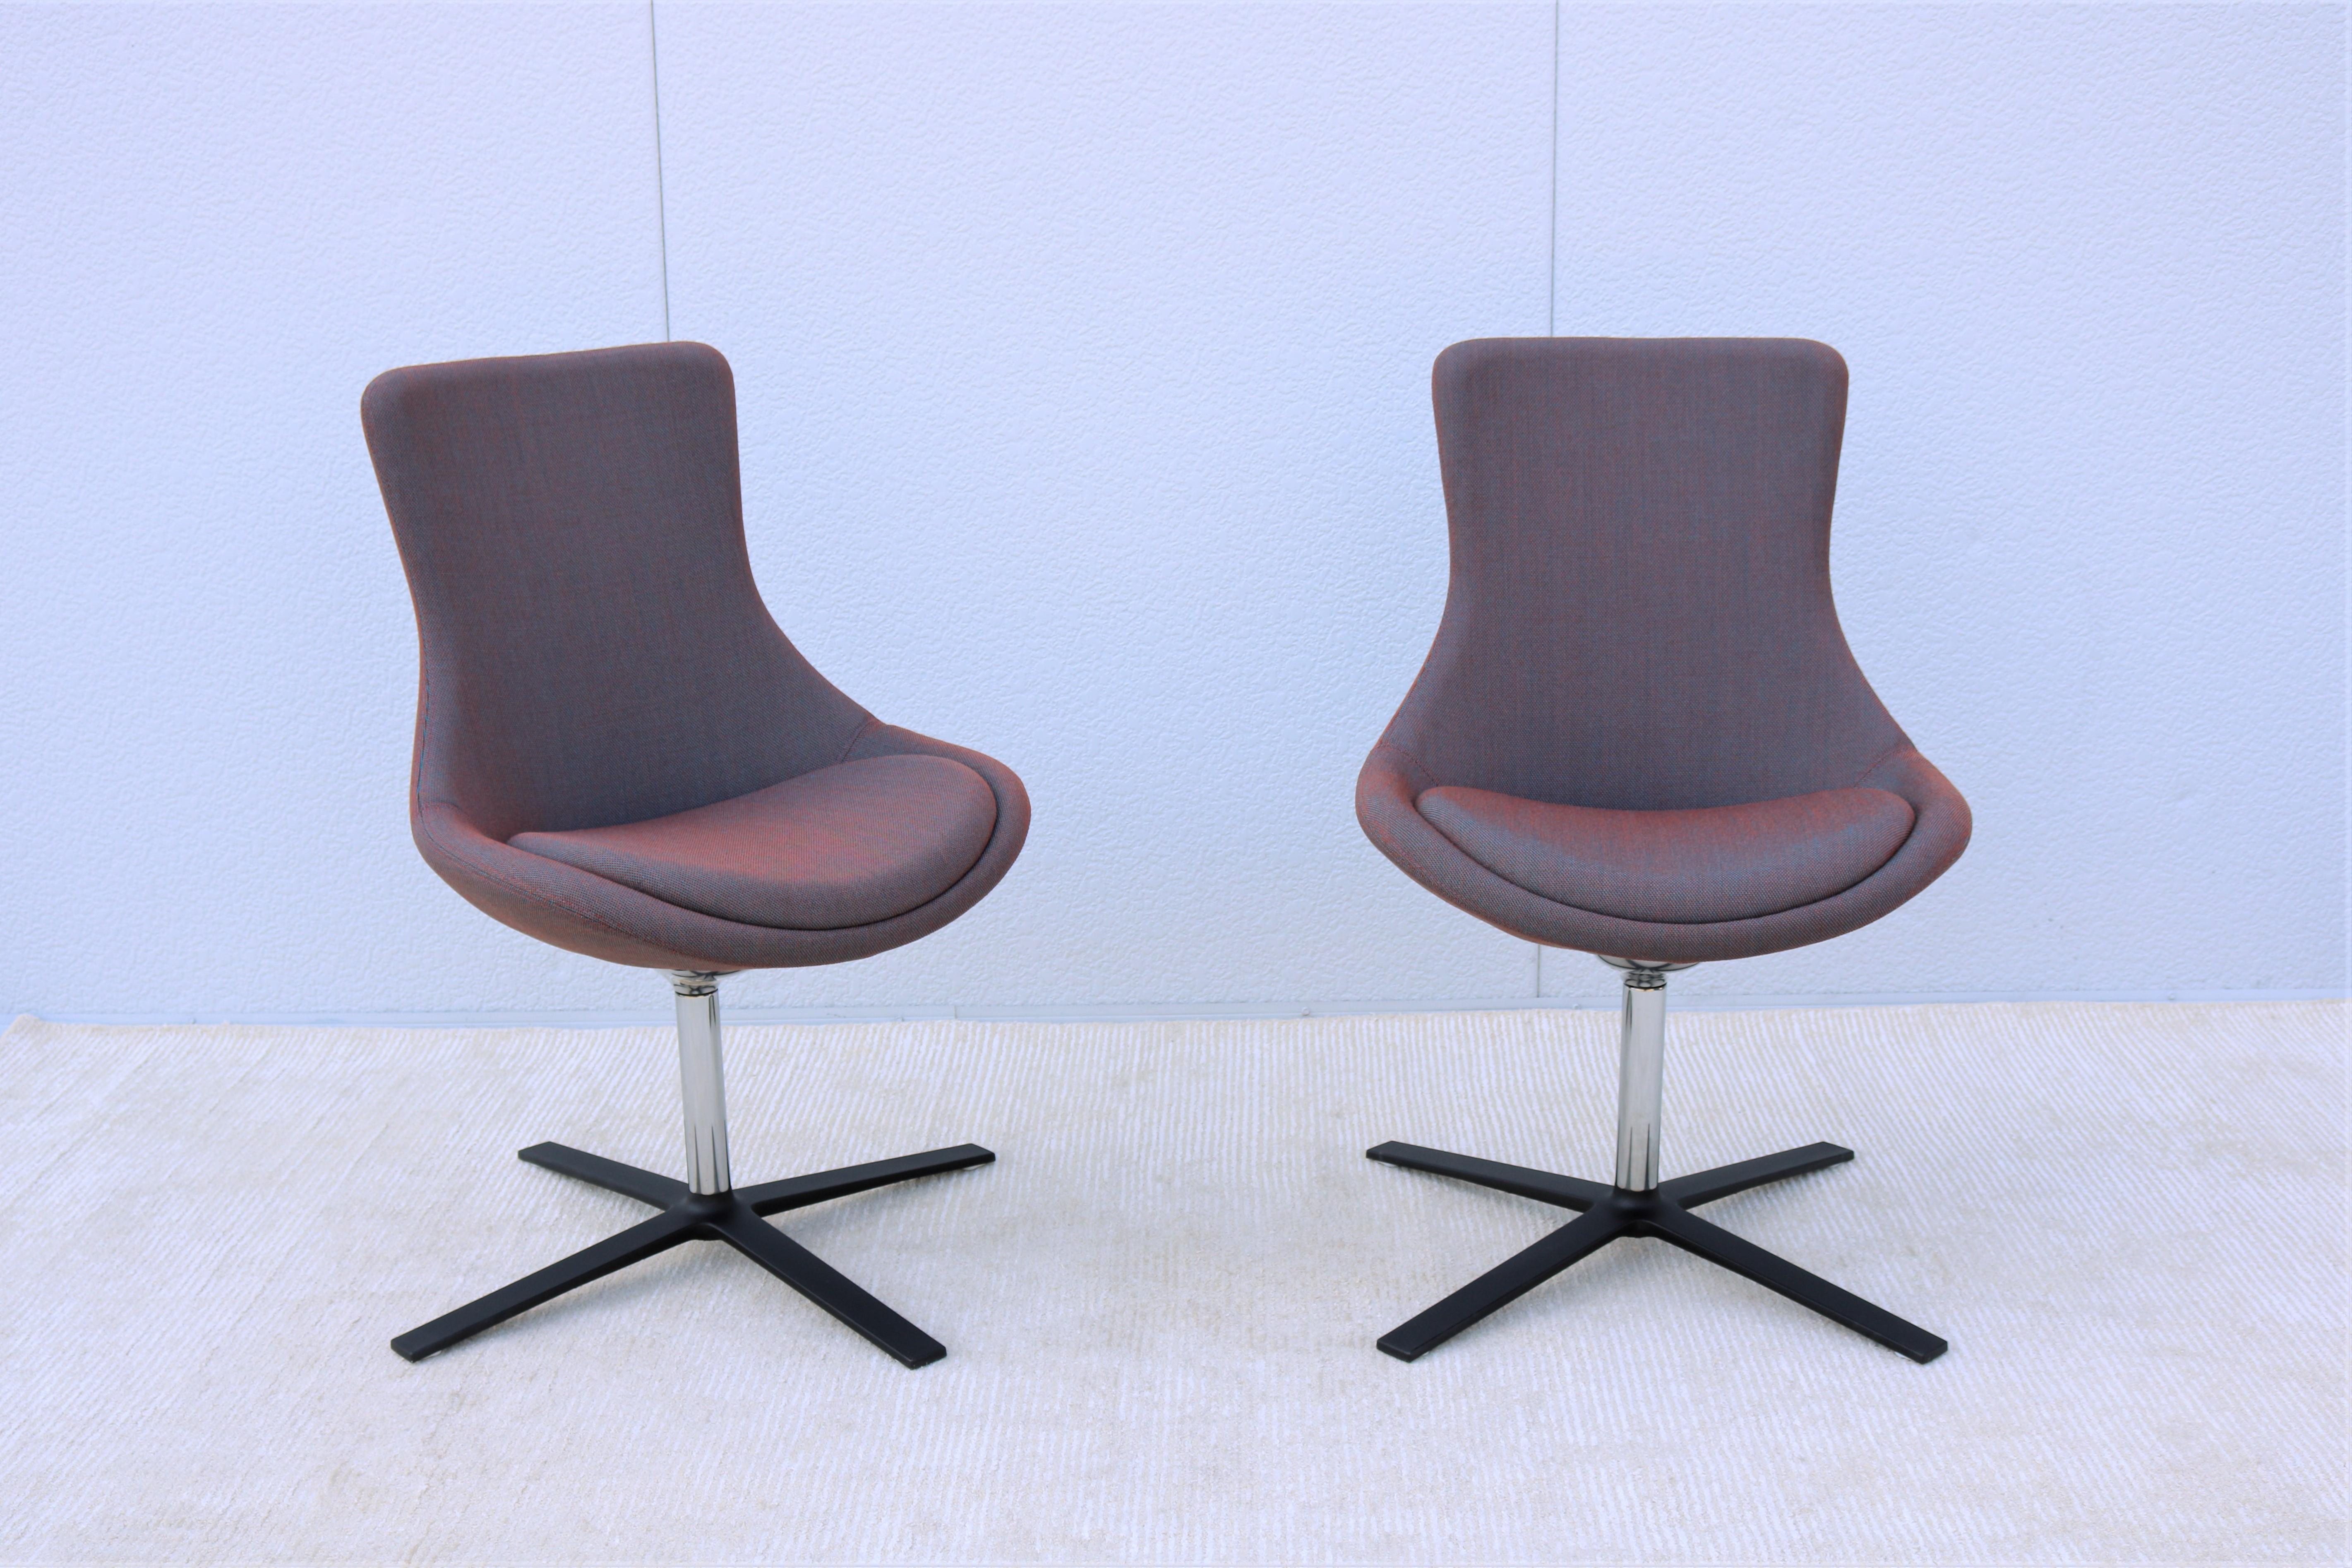 Bloom est un fauteuil pivotant rembourré à usage multiple. Il offre une posture plus droite grâce à un mécanisme d'inclinaison dynamique, permettant un léger mouvement de bascule.
Fabriqué en mousse moulée pour un niveau raffiné de confort et de